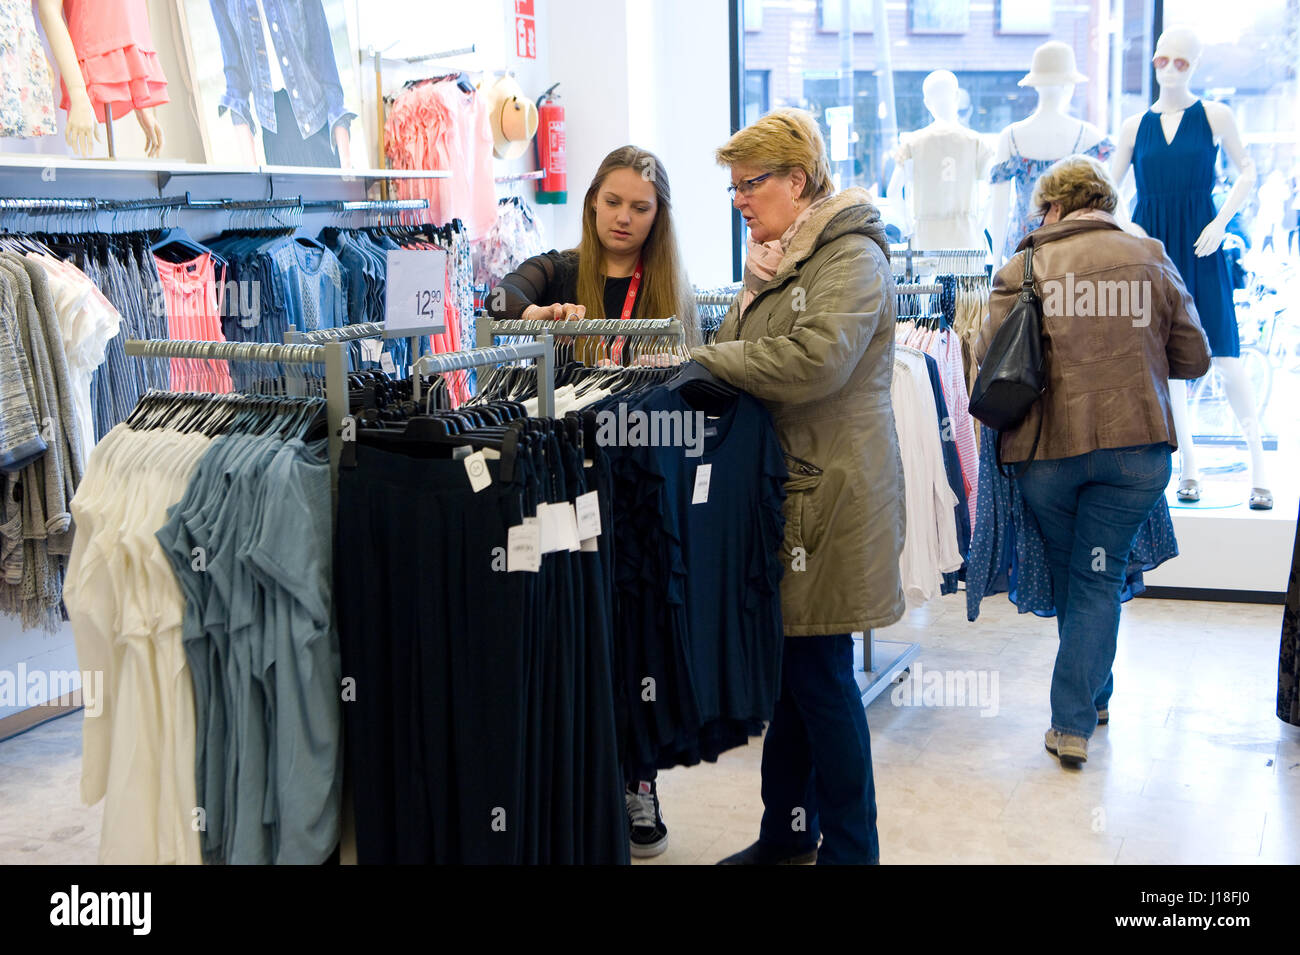 ENSCHEDE, Pays-Bas - 13 avril 2017 : Les femmes sont shopping in clothes store C&A après qu'il a été rouvert. Banque D'Images